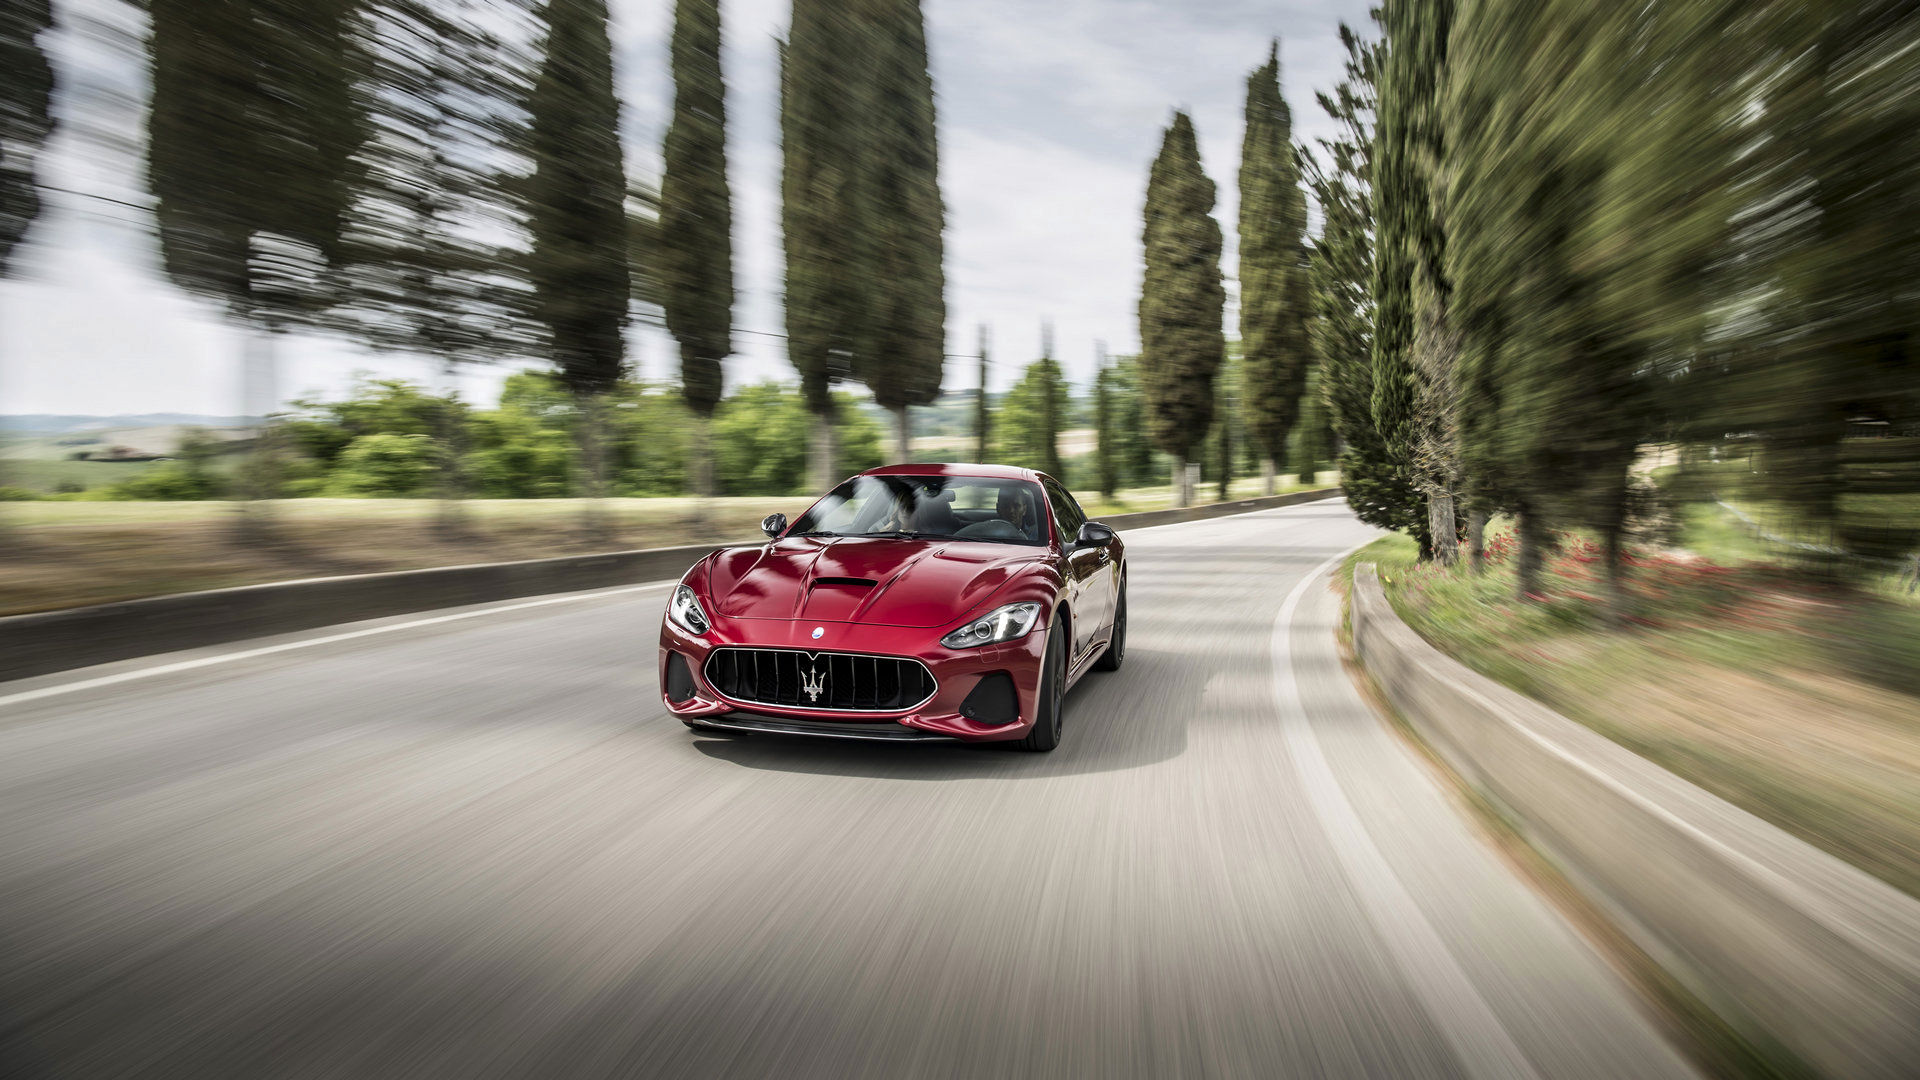 Maserati GranTurismo - GranTurismo front view, riding on a country road